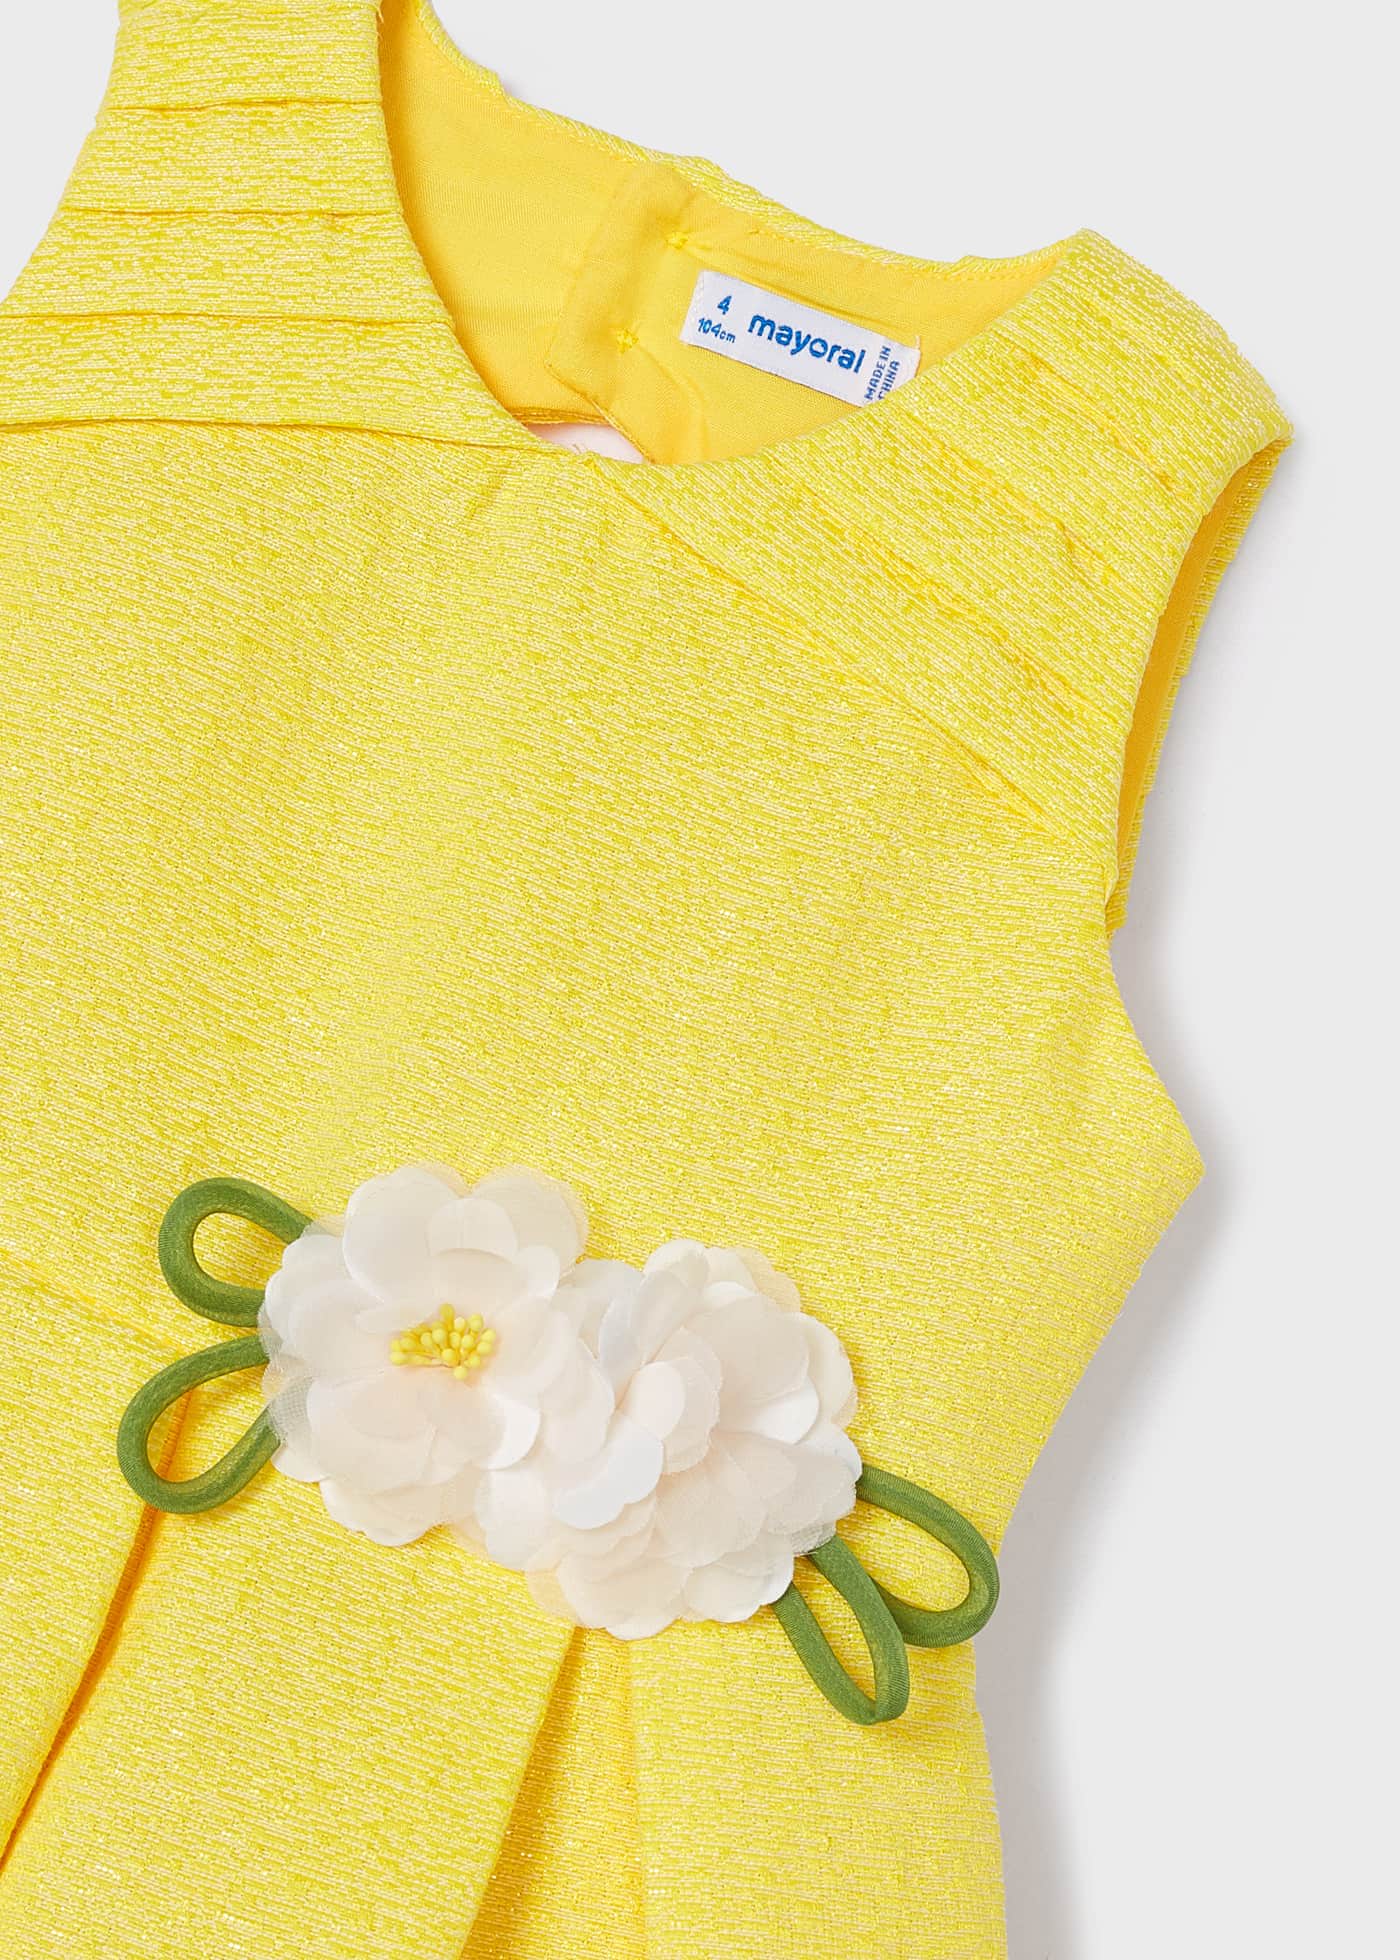 Vestido amarillo con aplique floral para mini niña